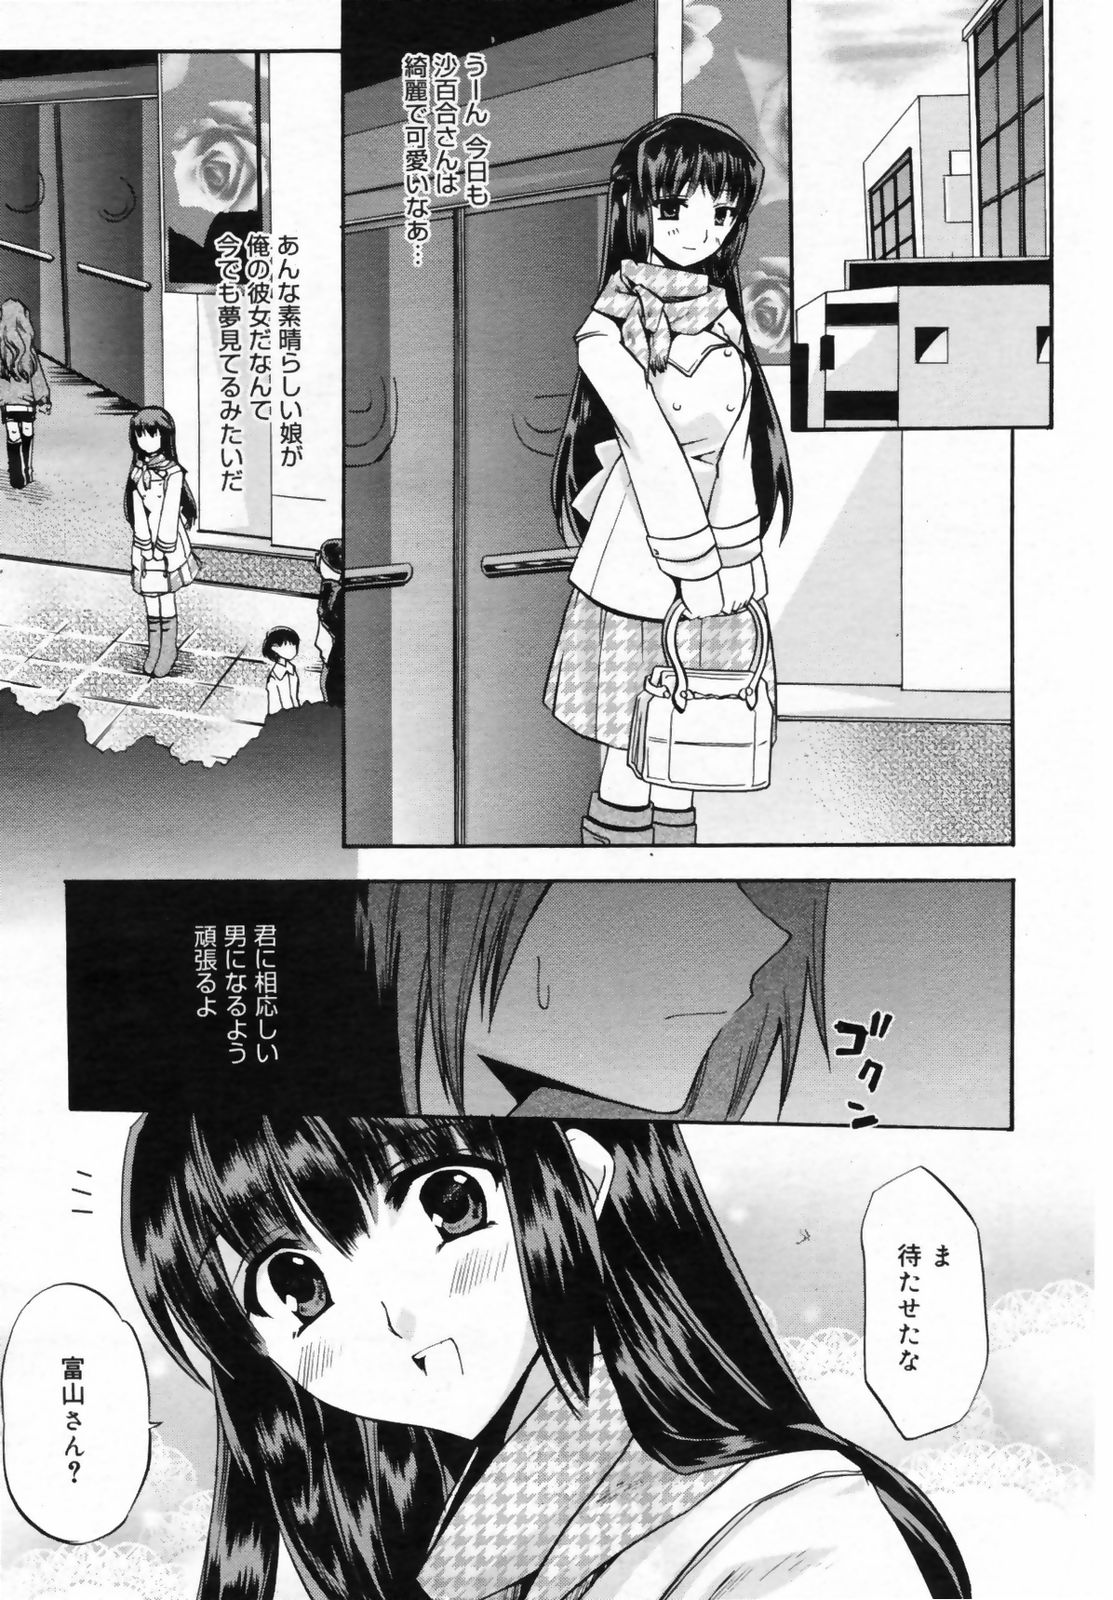 Manga Bangaichi 2009-02 Vol. 234 page 43 full